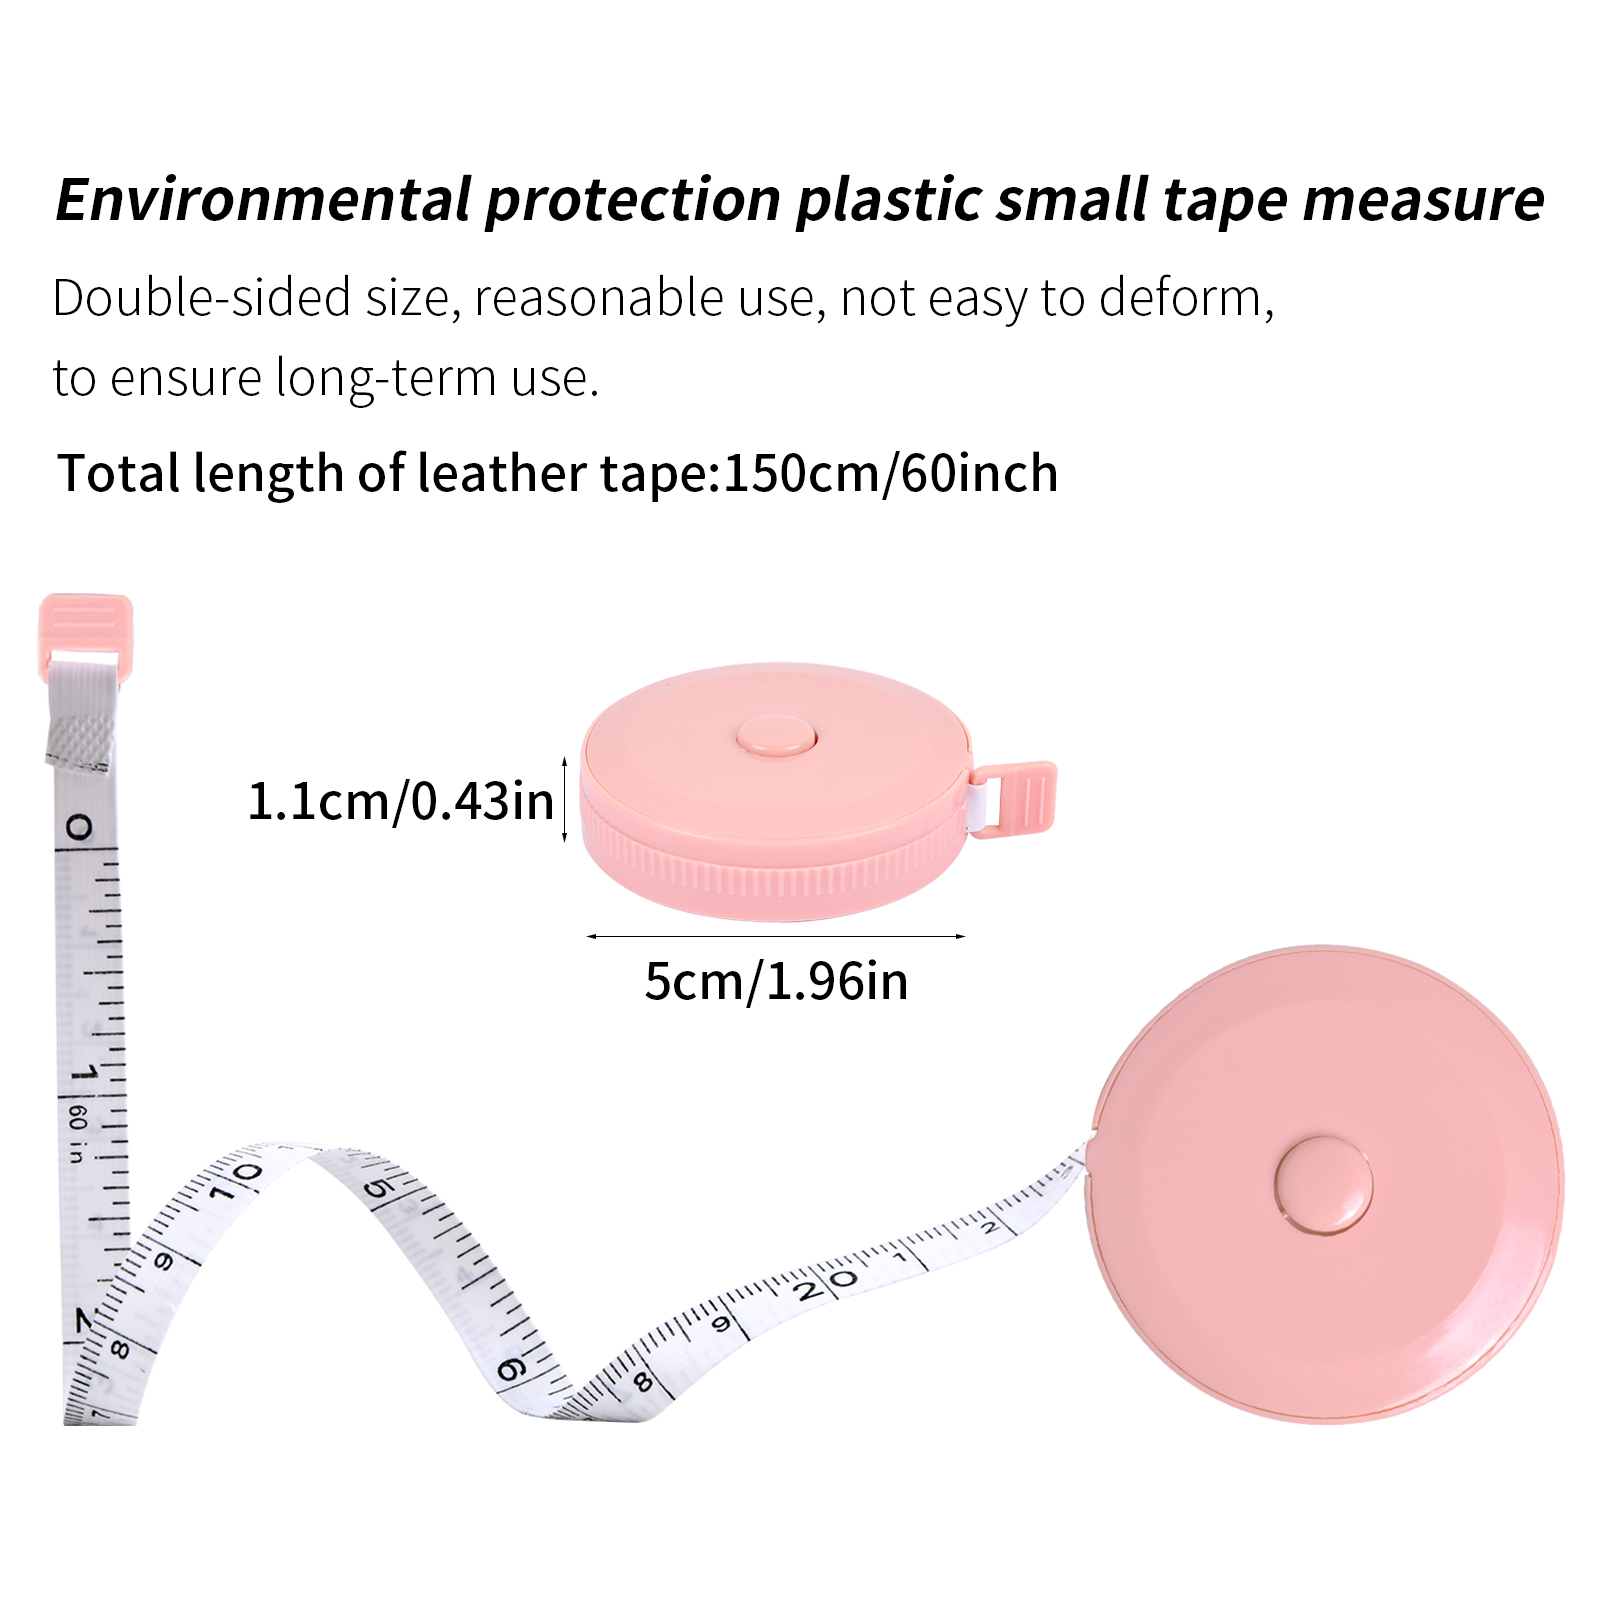 1-3pcs Automatic Retractable Body Measurement Tape